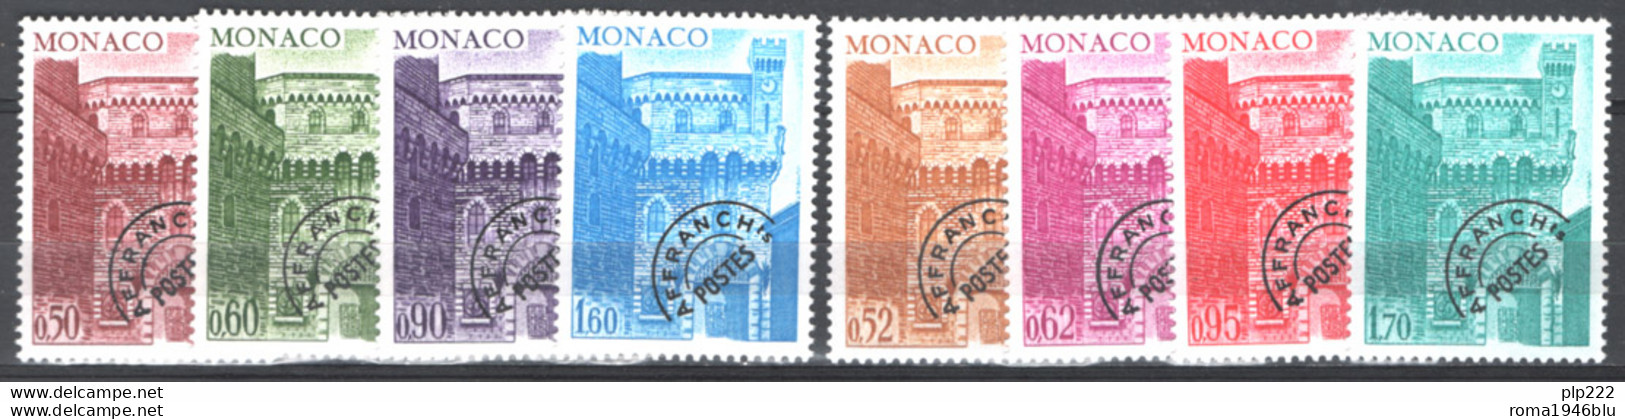 Monaco 1976 Annata Completa Con Preann / Complete Year Set With Precancel **/MNH VF - Annate Complete